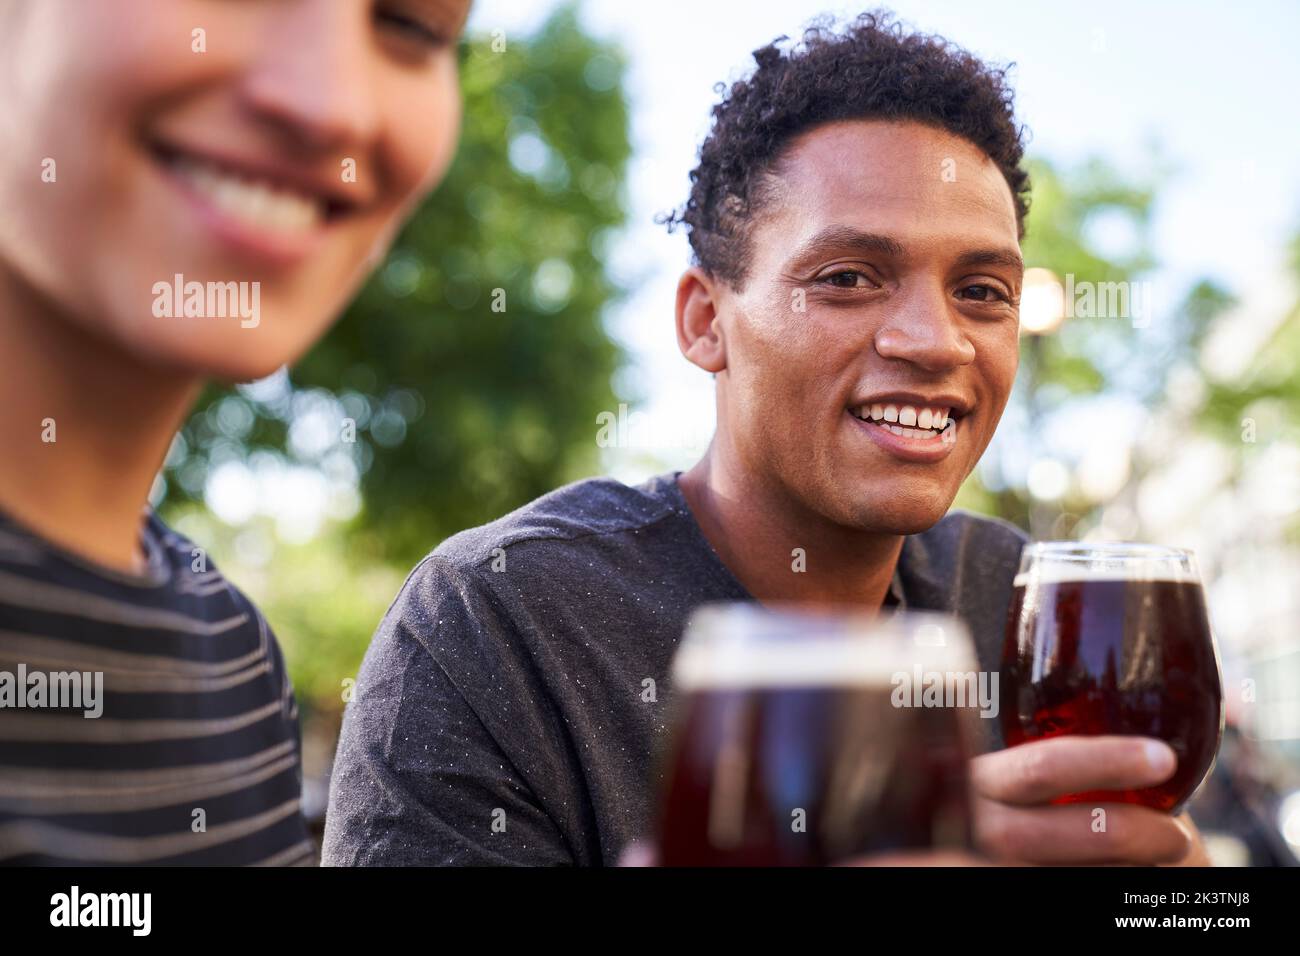 Porträt eines glücklichen jungen afroamerikanischen Mannes, der vor der Kamera lächelt und dabei ein Glas Bier in der Hand hält Stockfoto